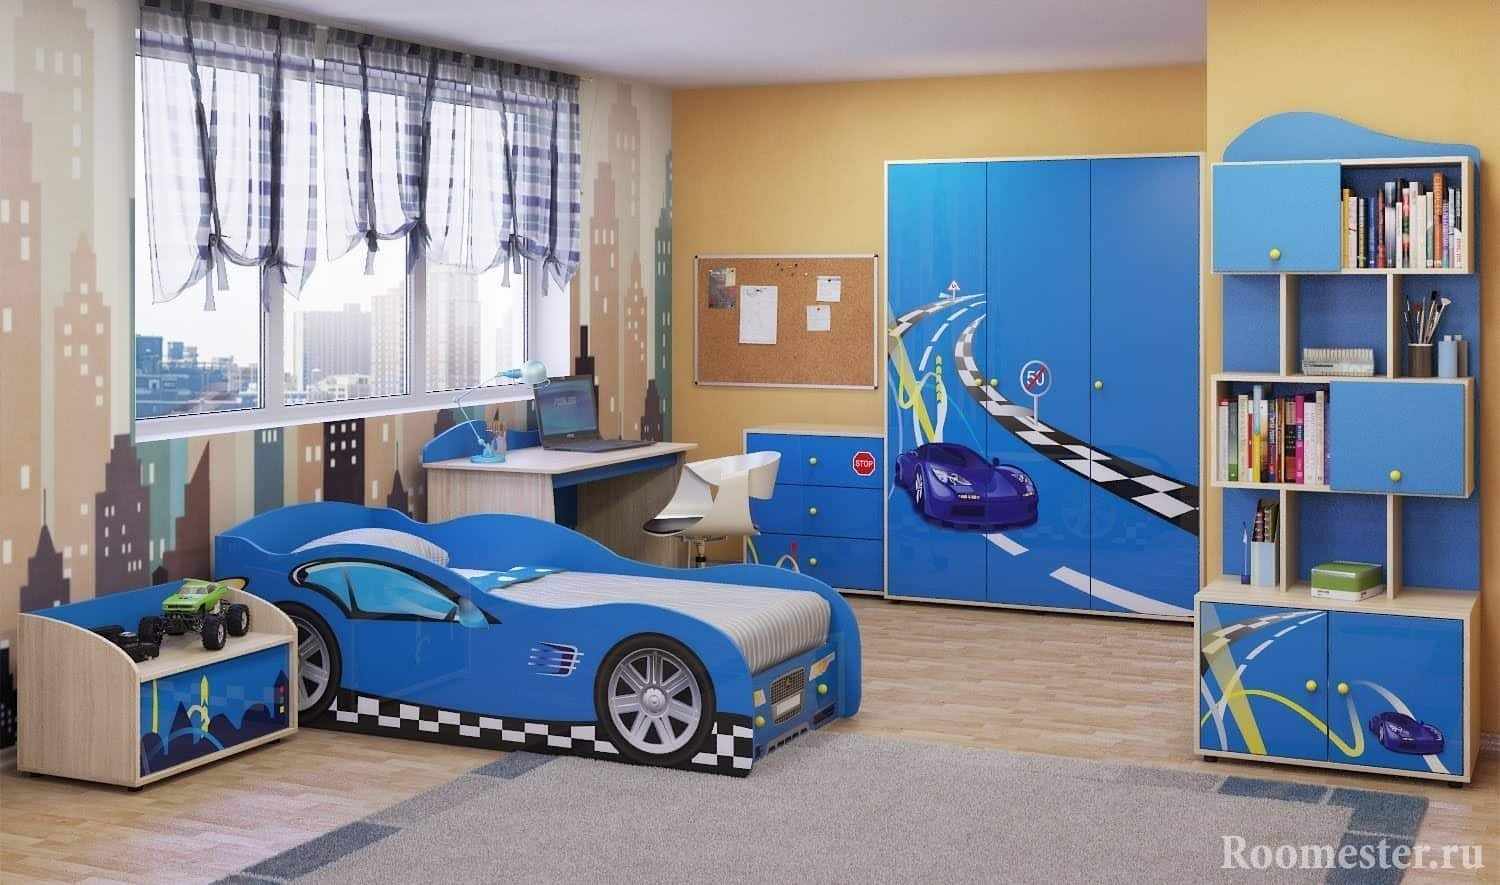 Детская комната, кровать с машинкой